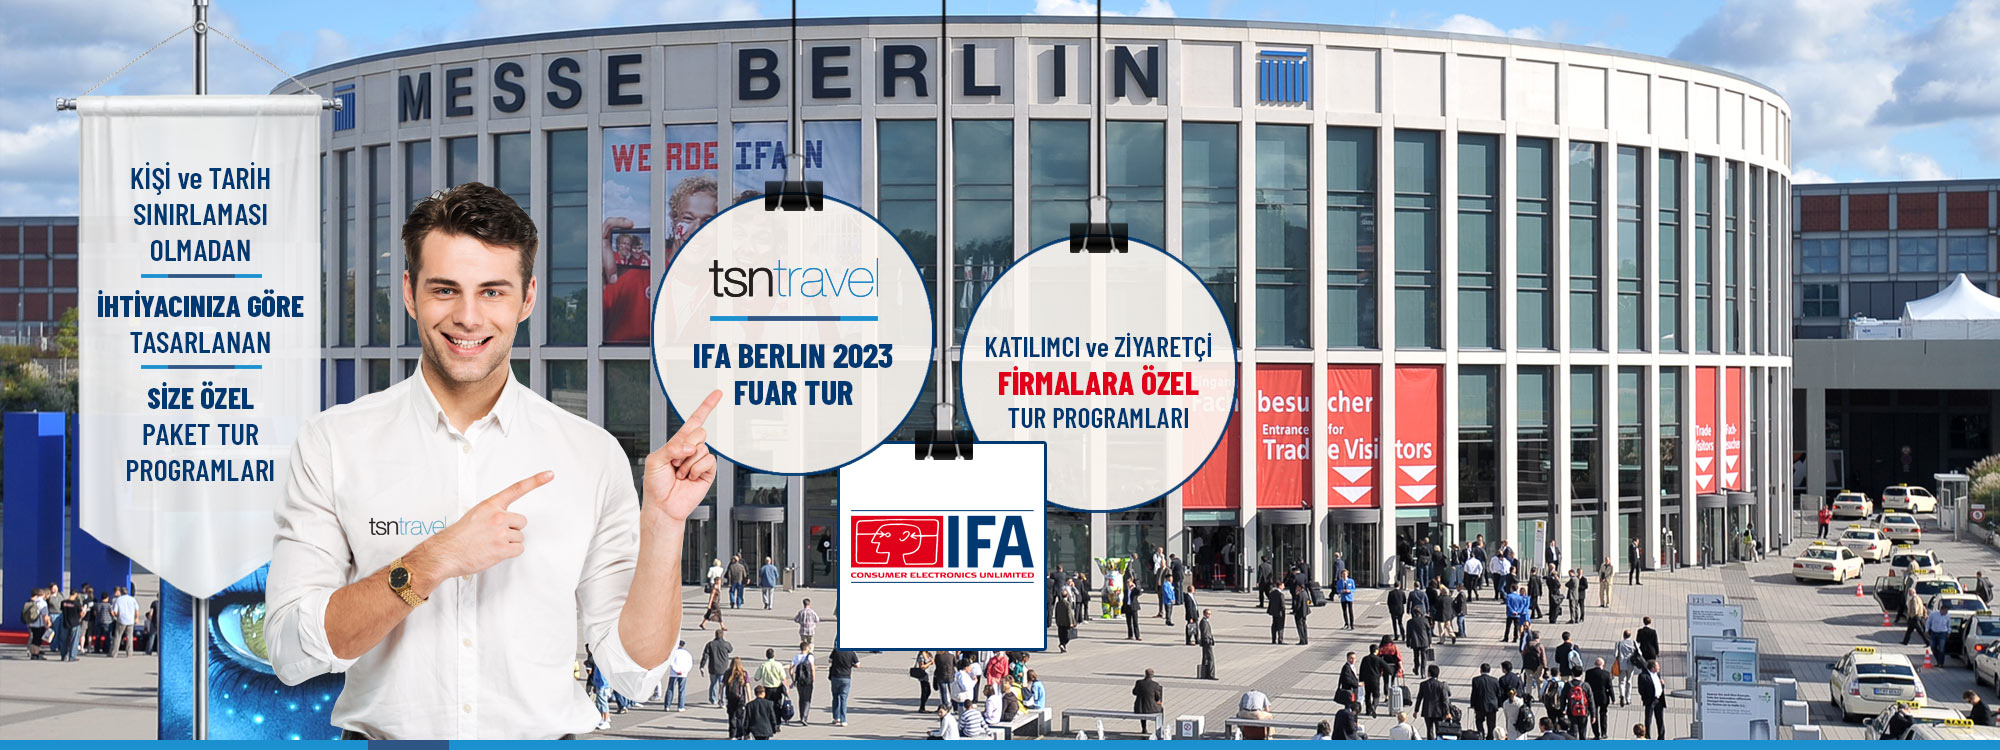 IFA Berlin 2023 Tüketici Elektroniği ve Ev Aletleri Fuarı paket tur programı